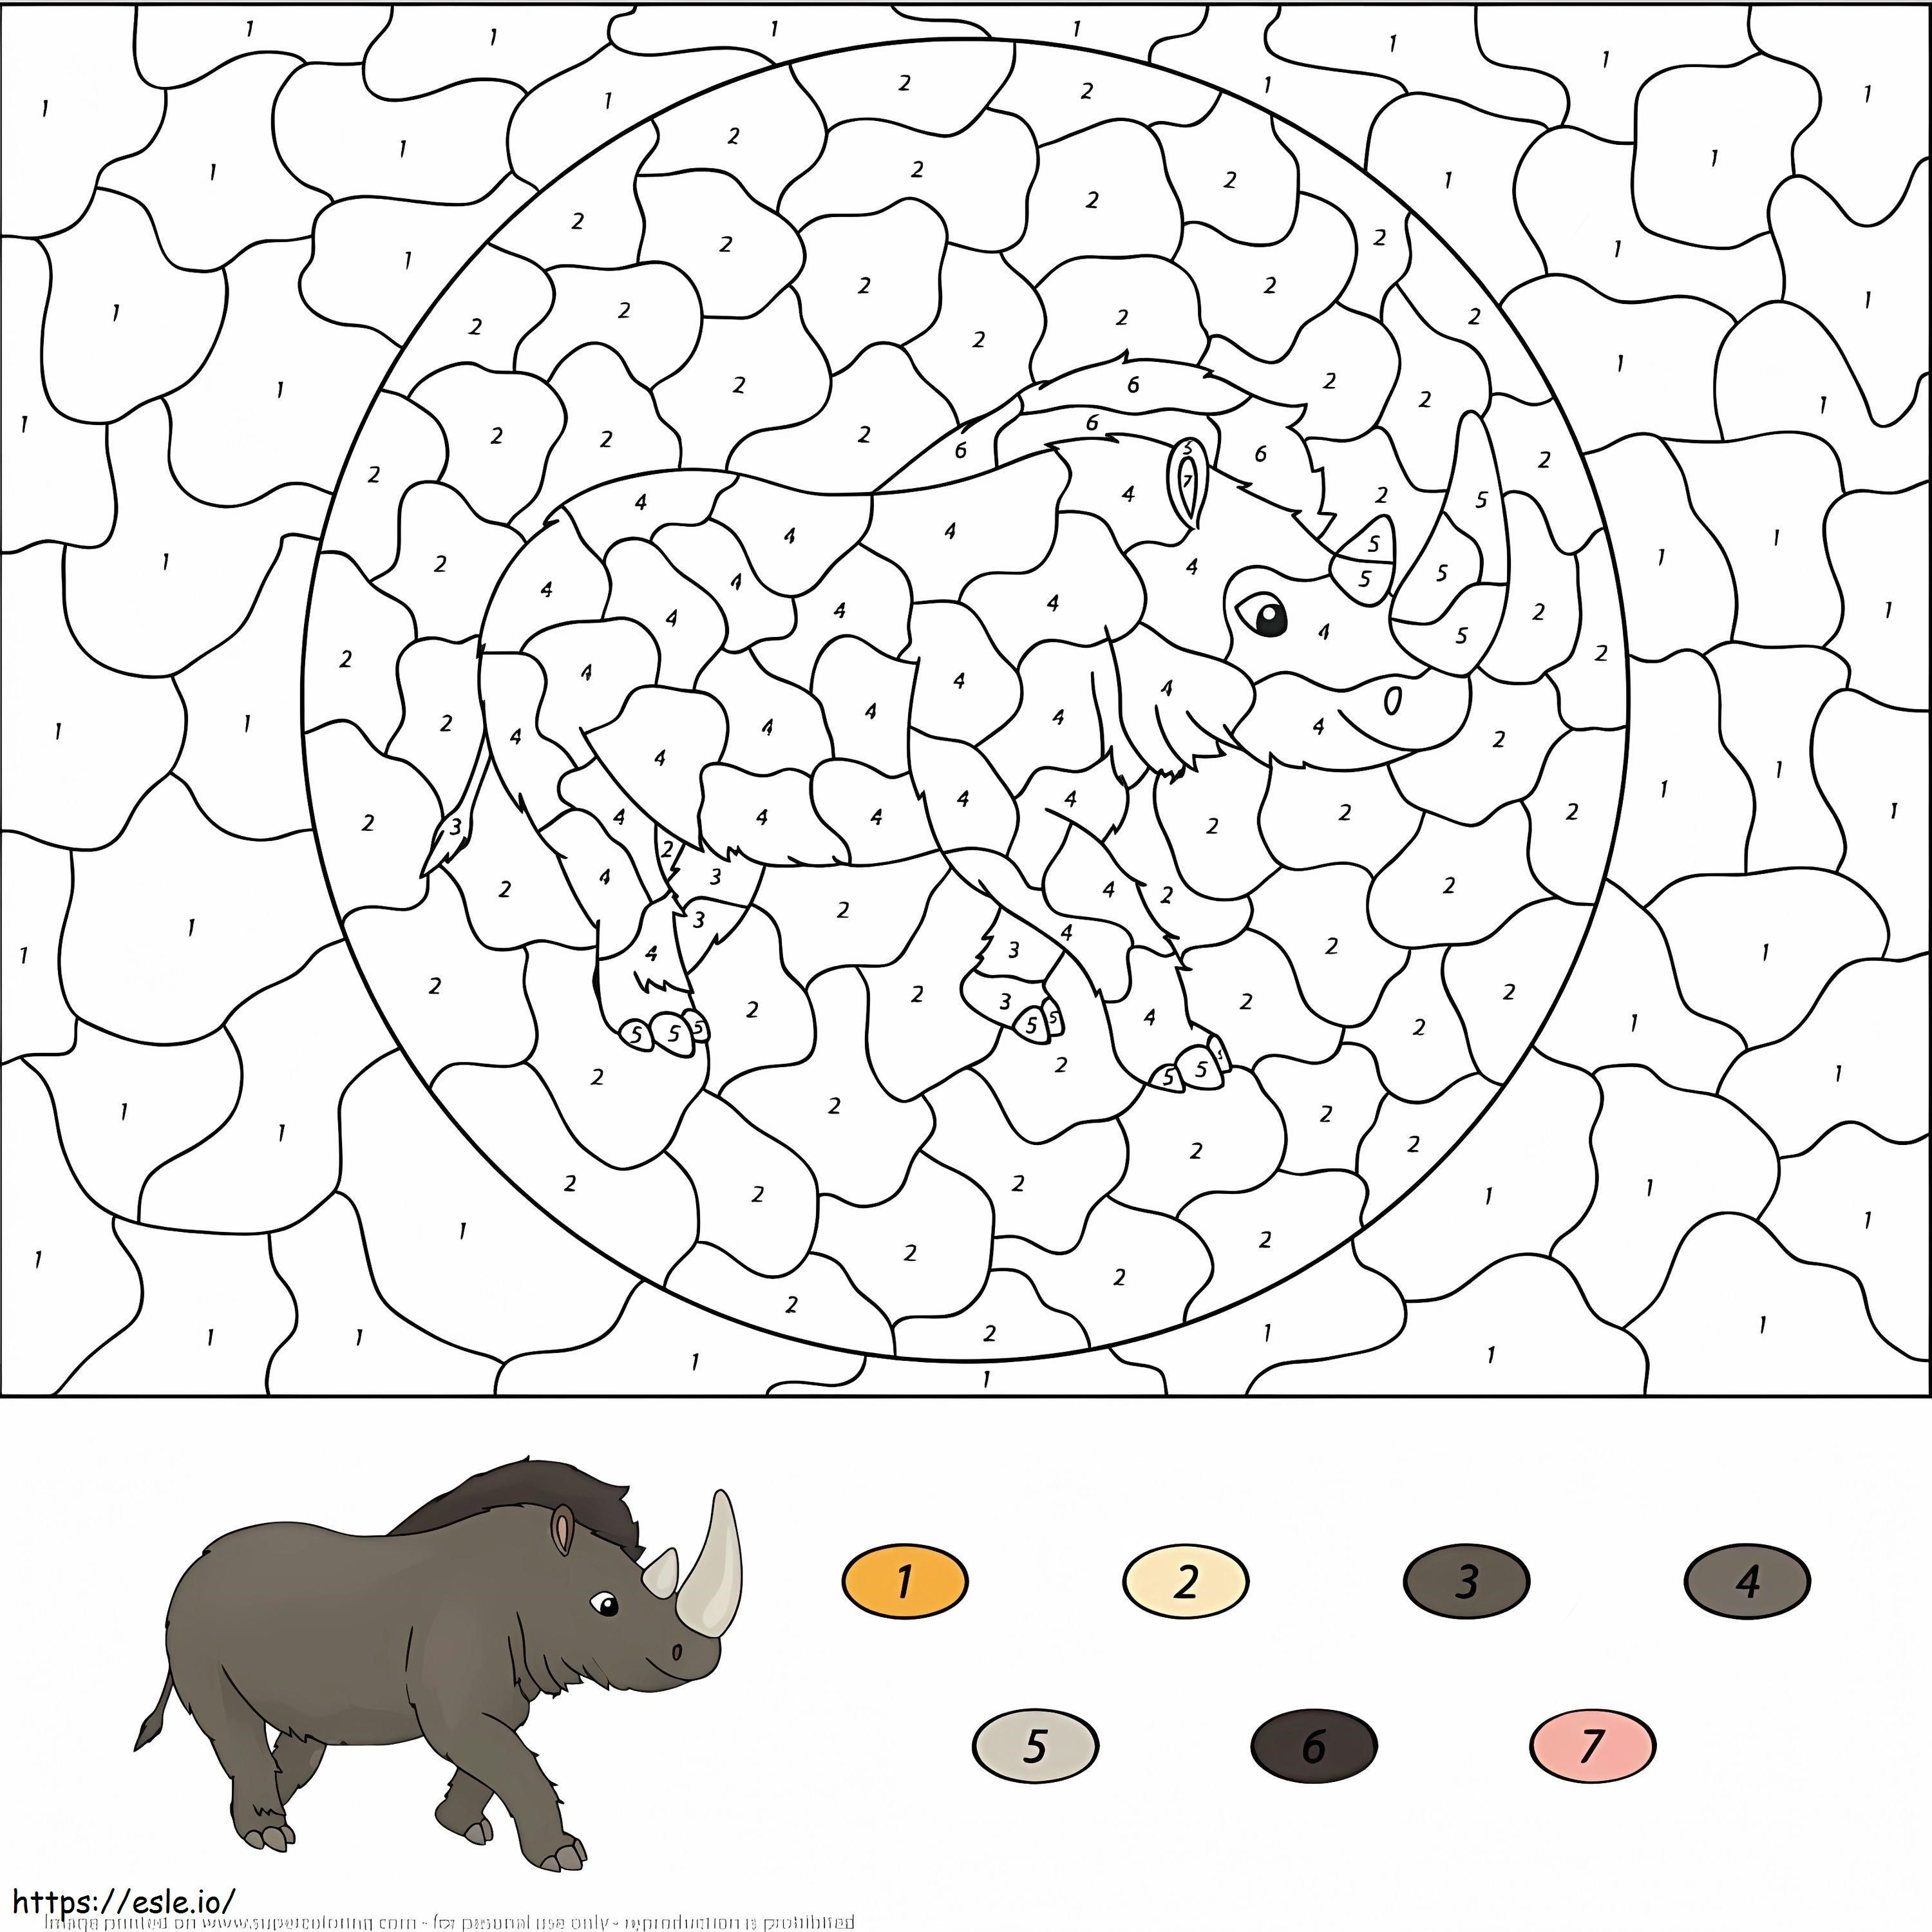 Colore del rinoceronte per numero da colorare